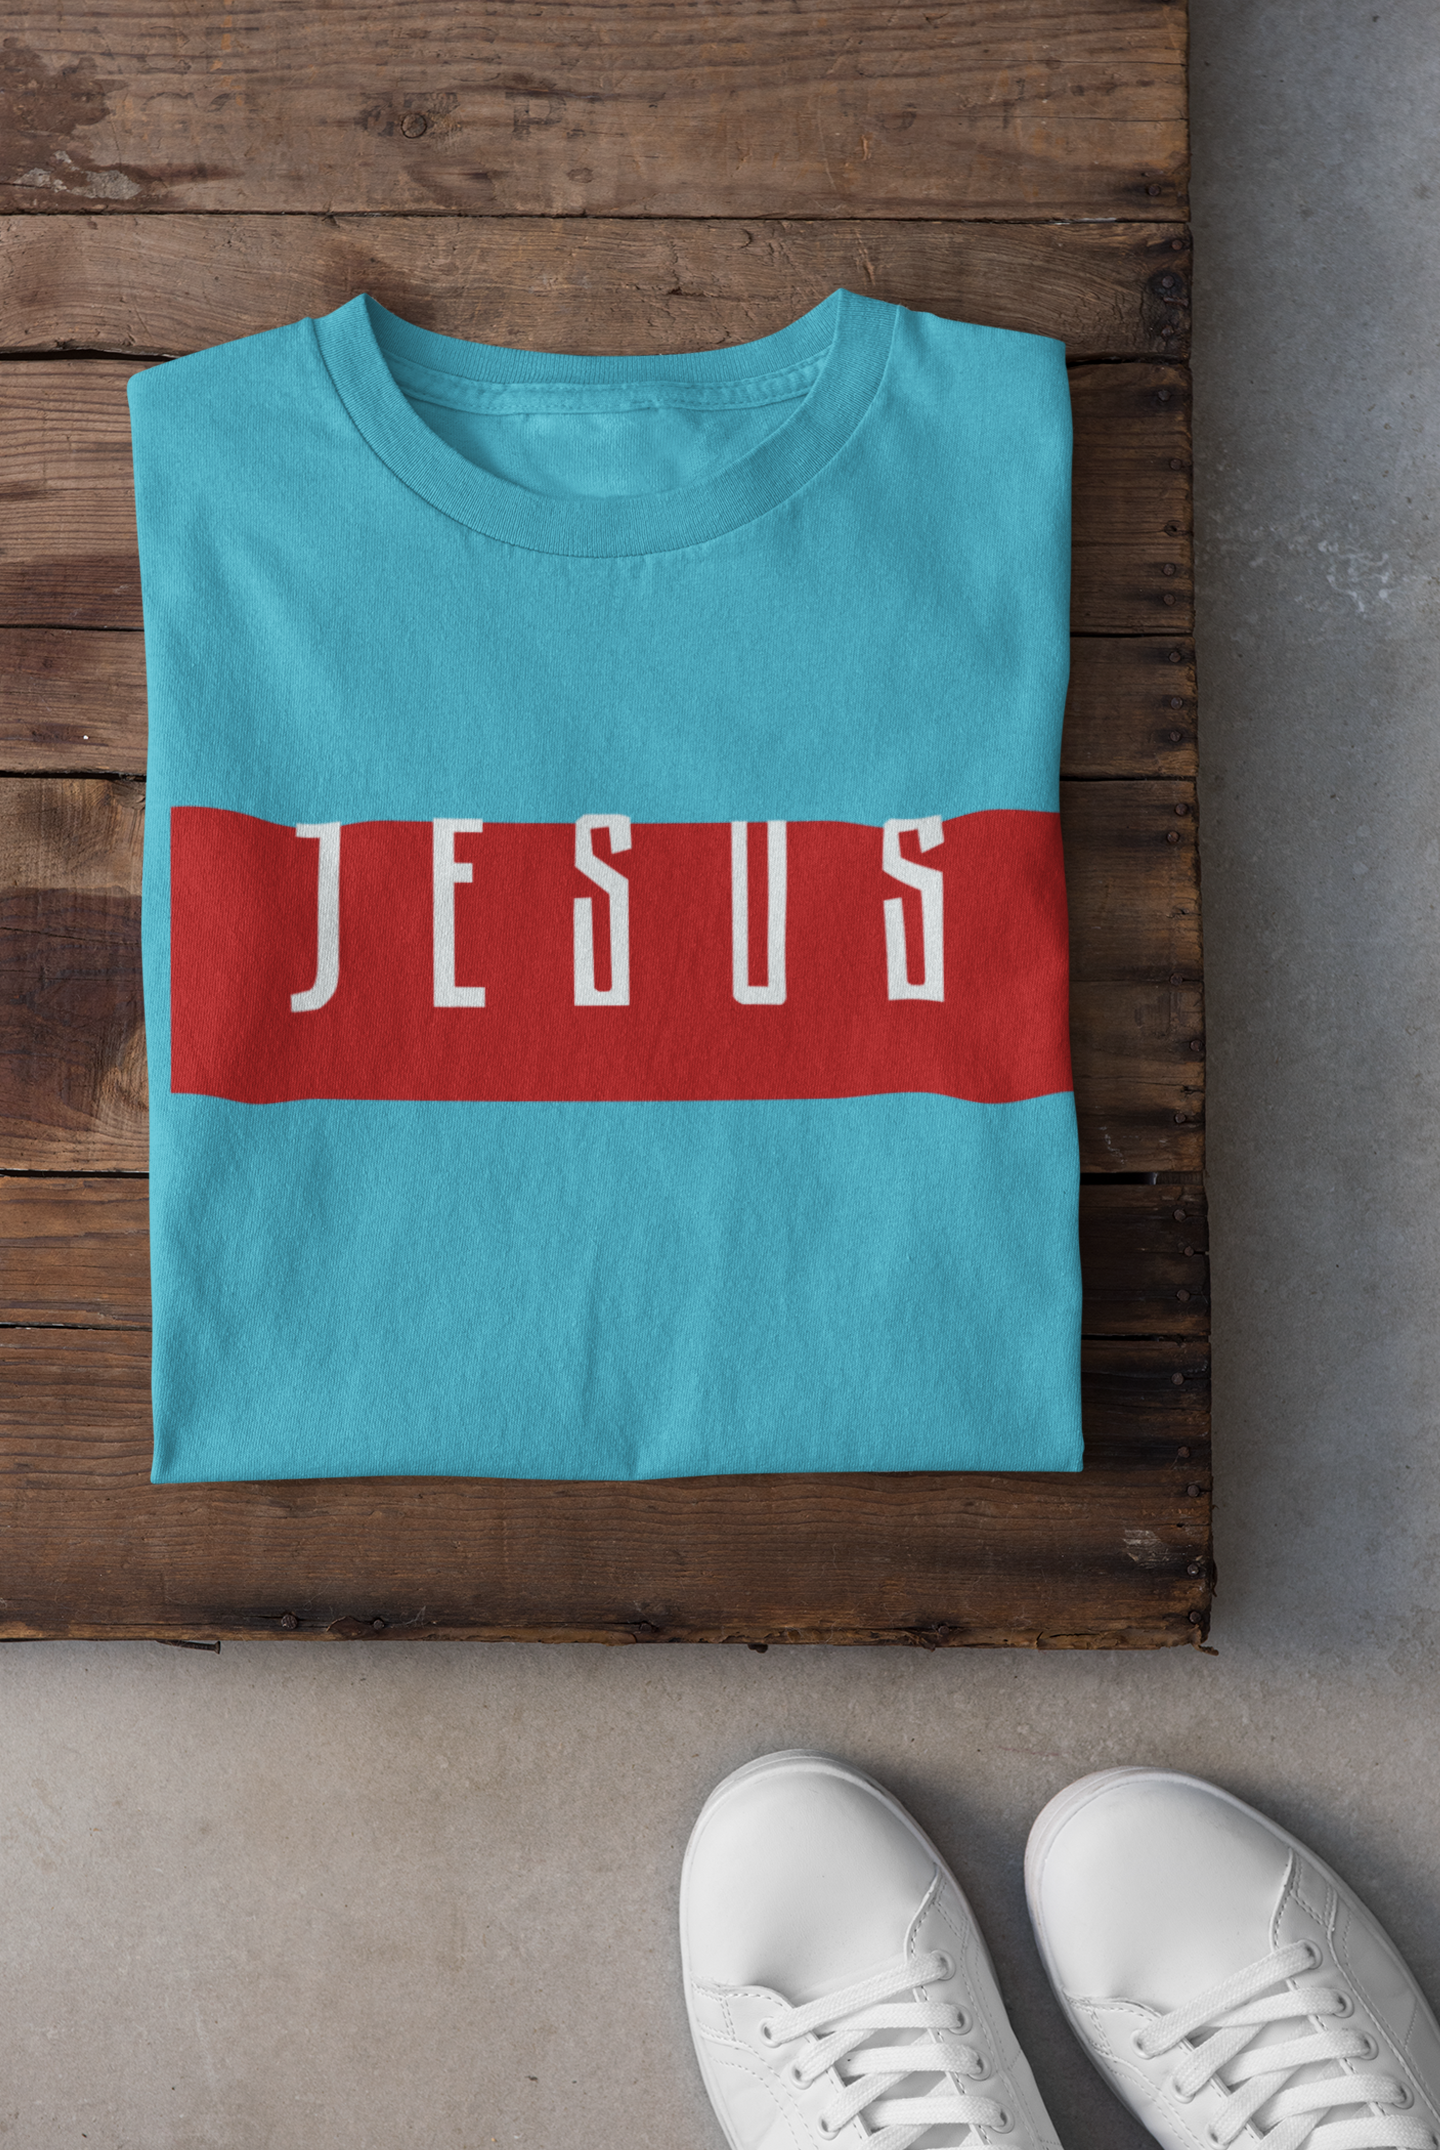 Jesus Women Half Sleeves T-shirt- FunkyTeesClub